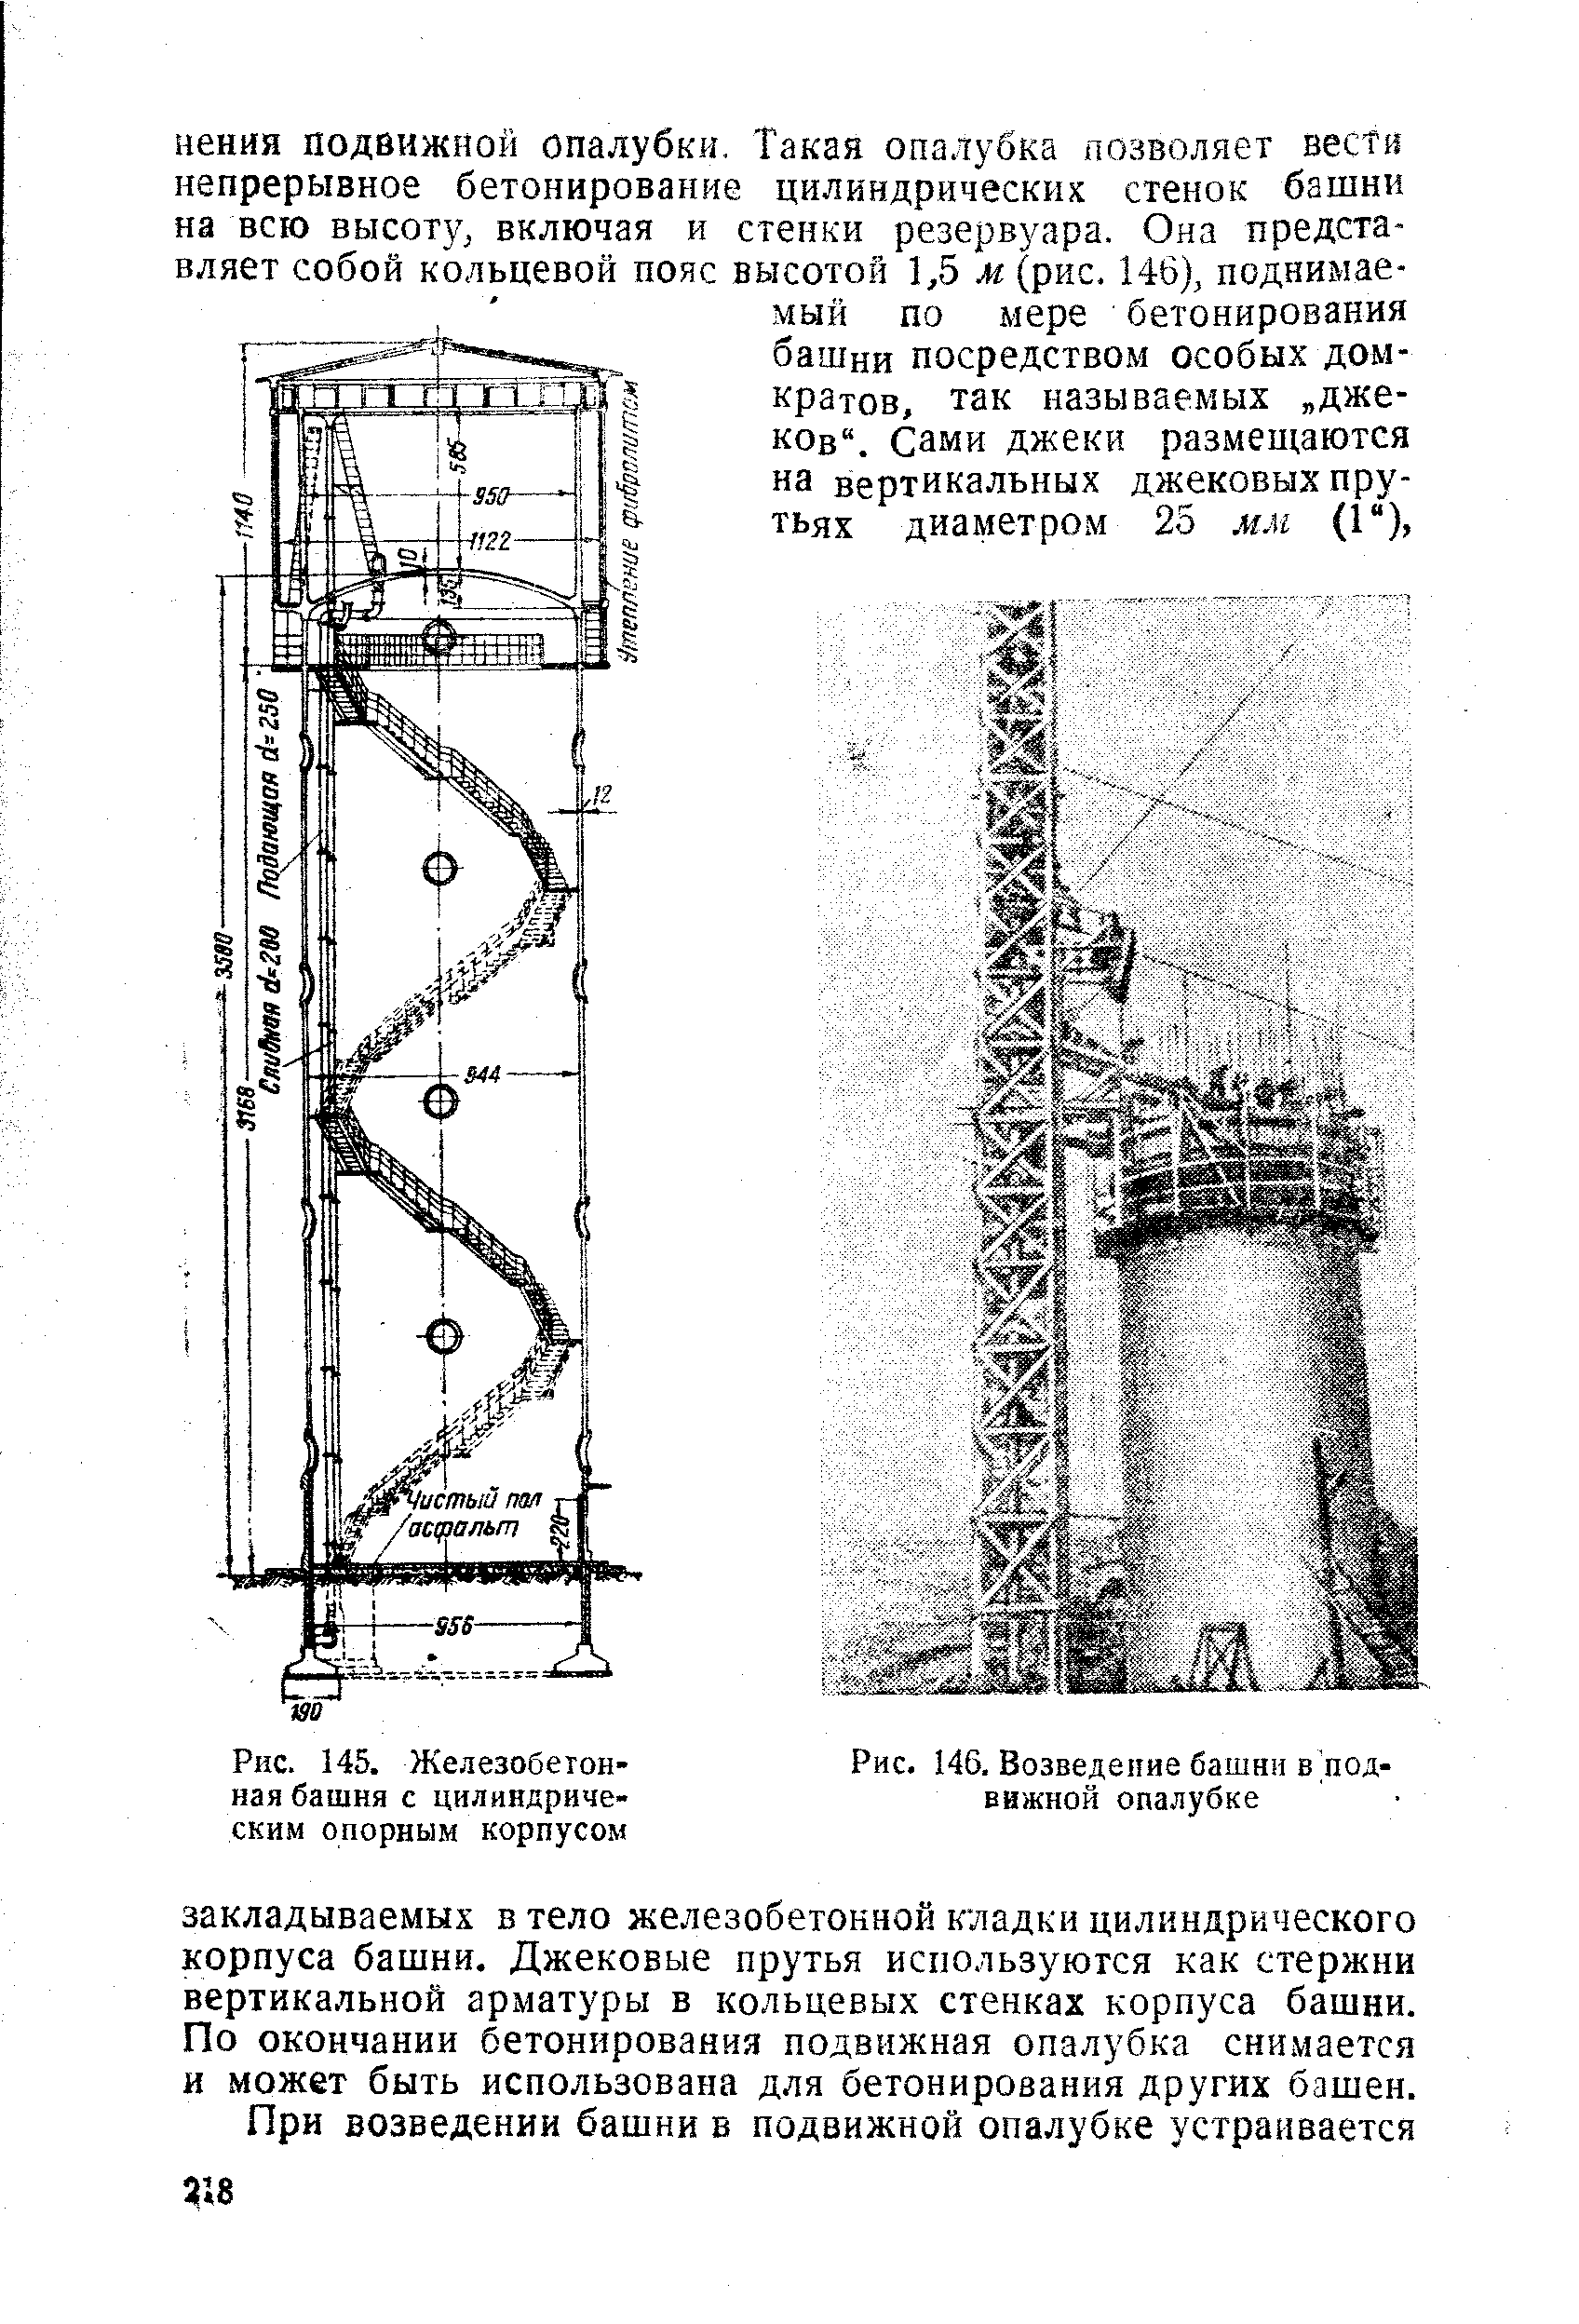 Рис. 145. Железобетонная башня с цилиндрическим опорным корпусом
